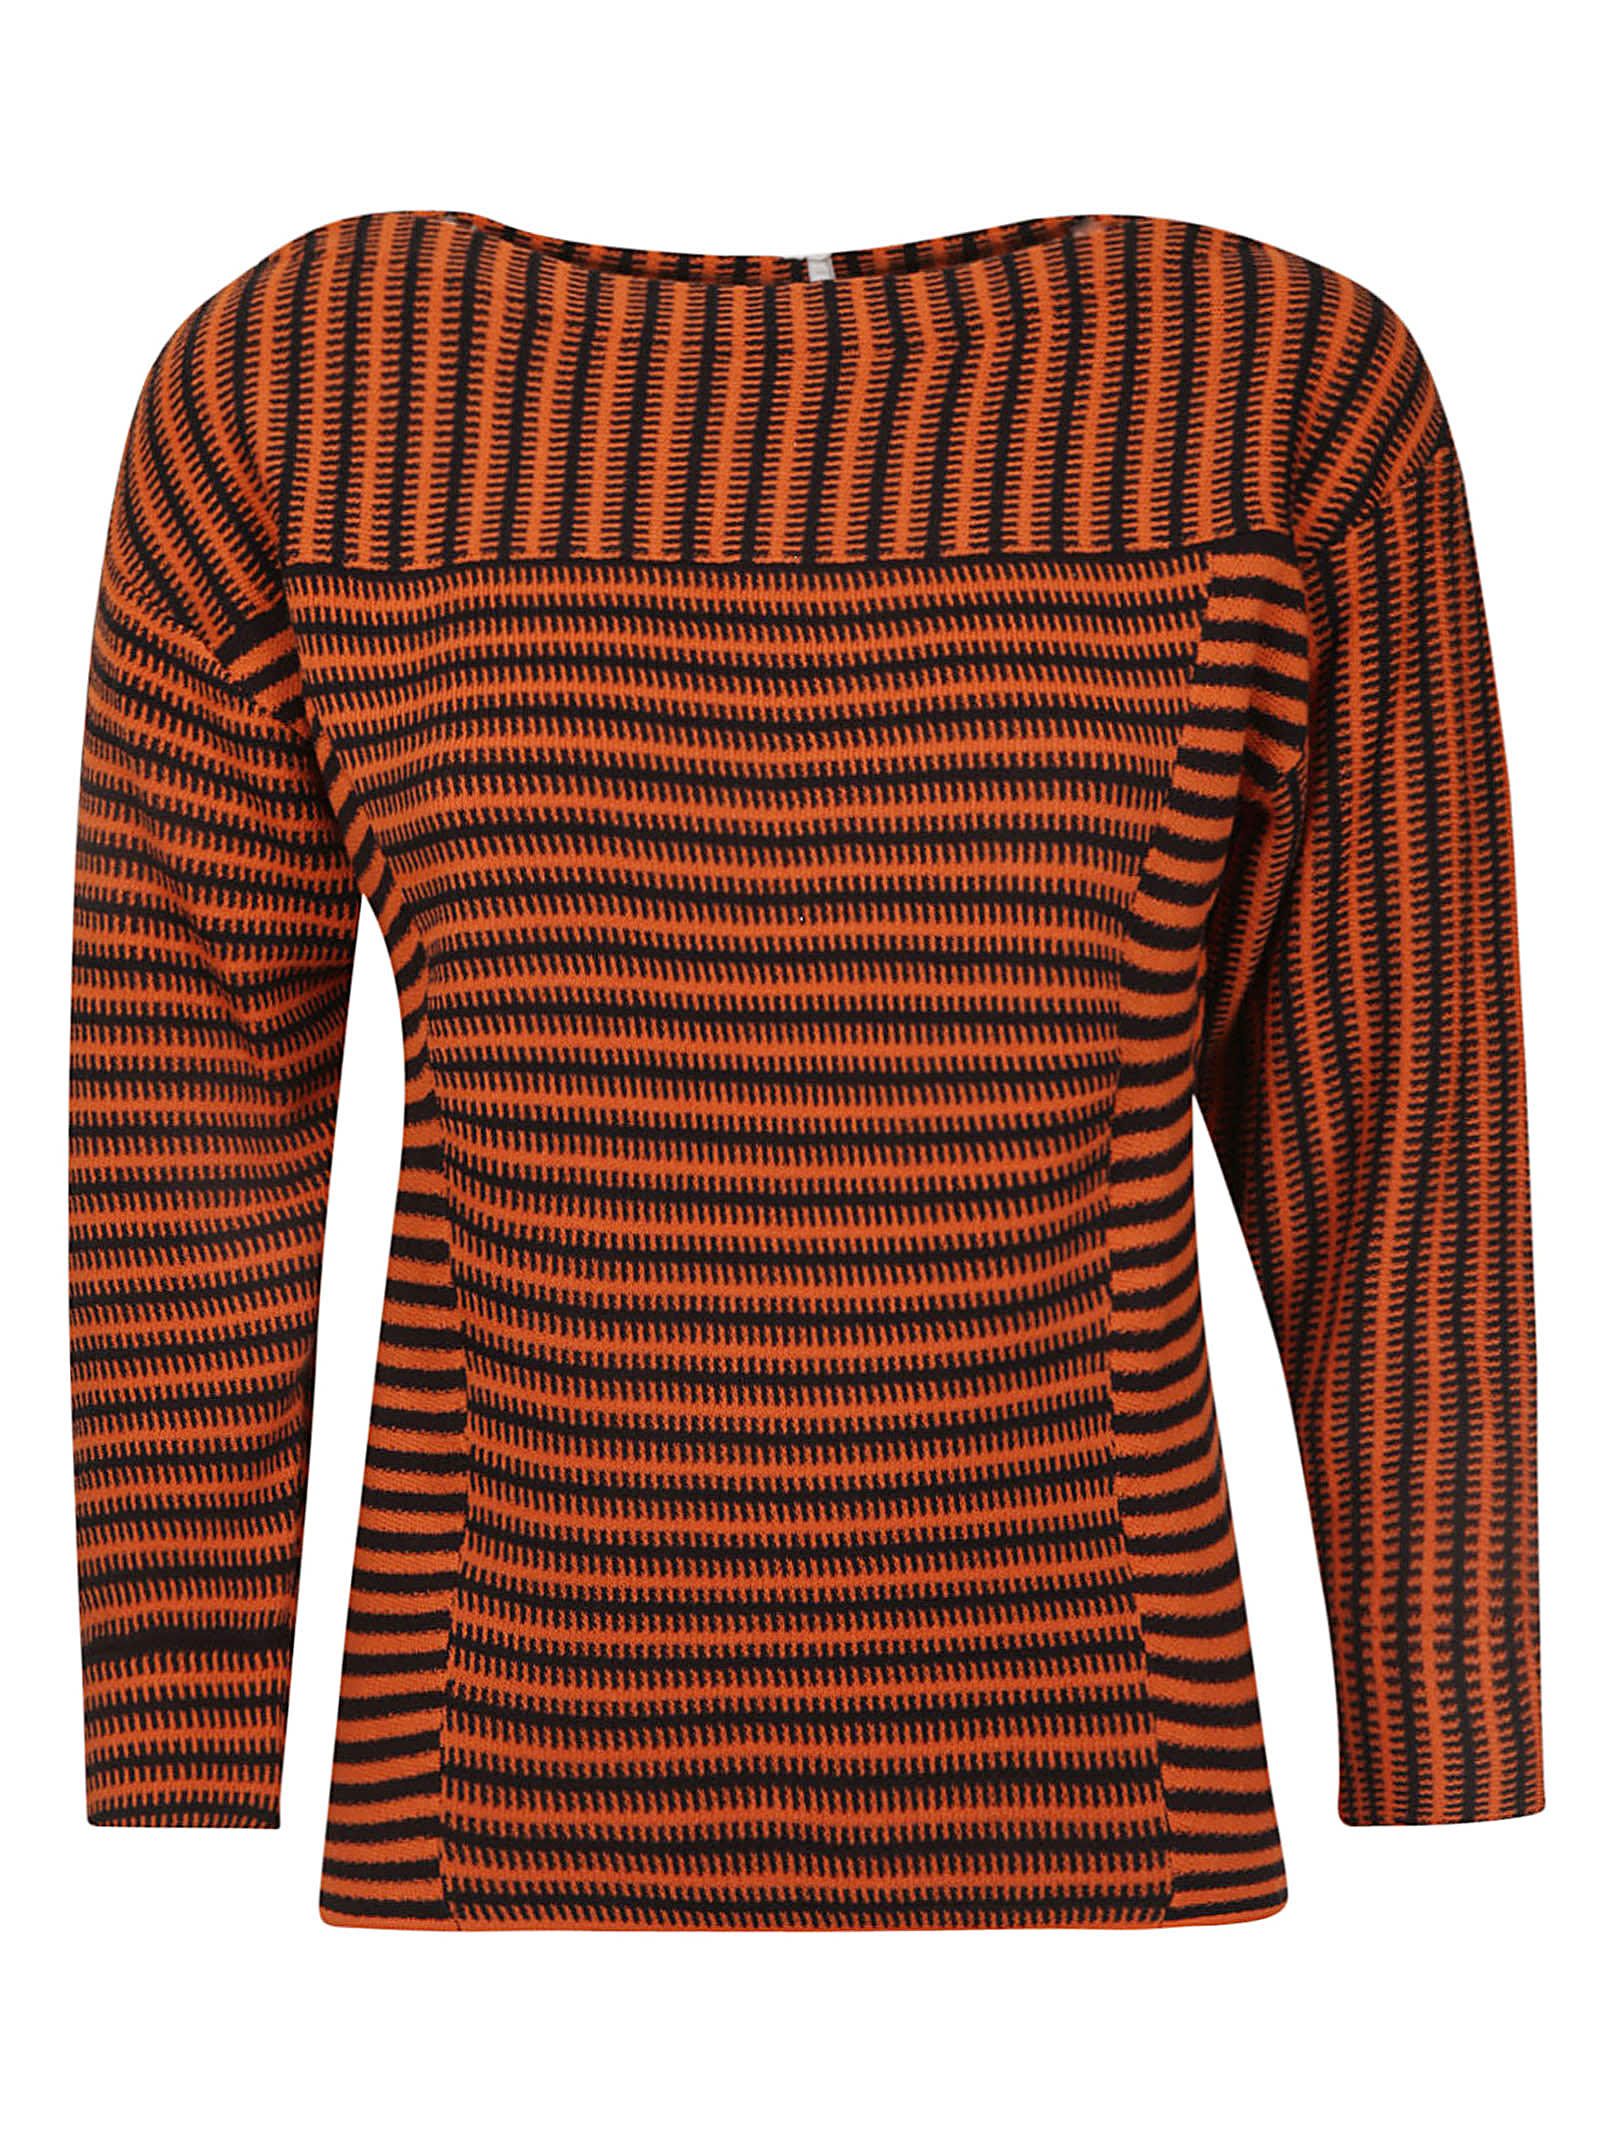 Chloé Stripe Patterned Sweatshirt